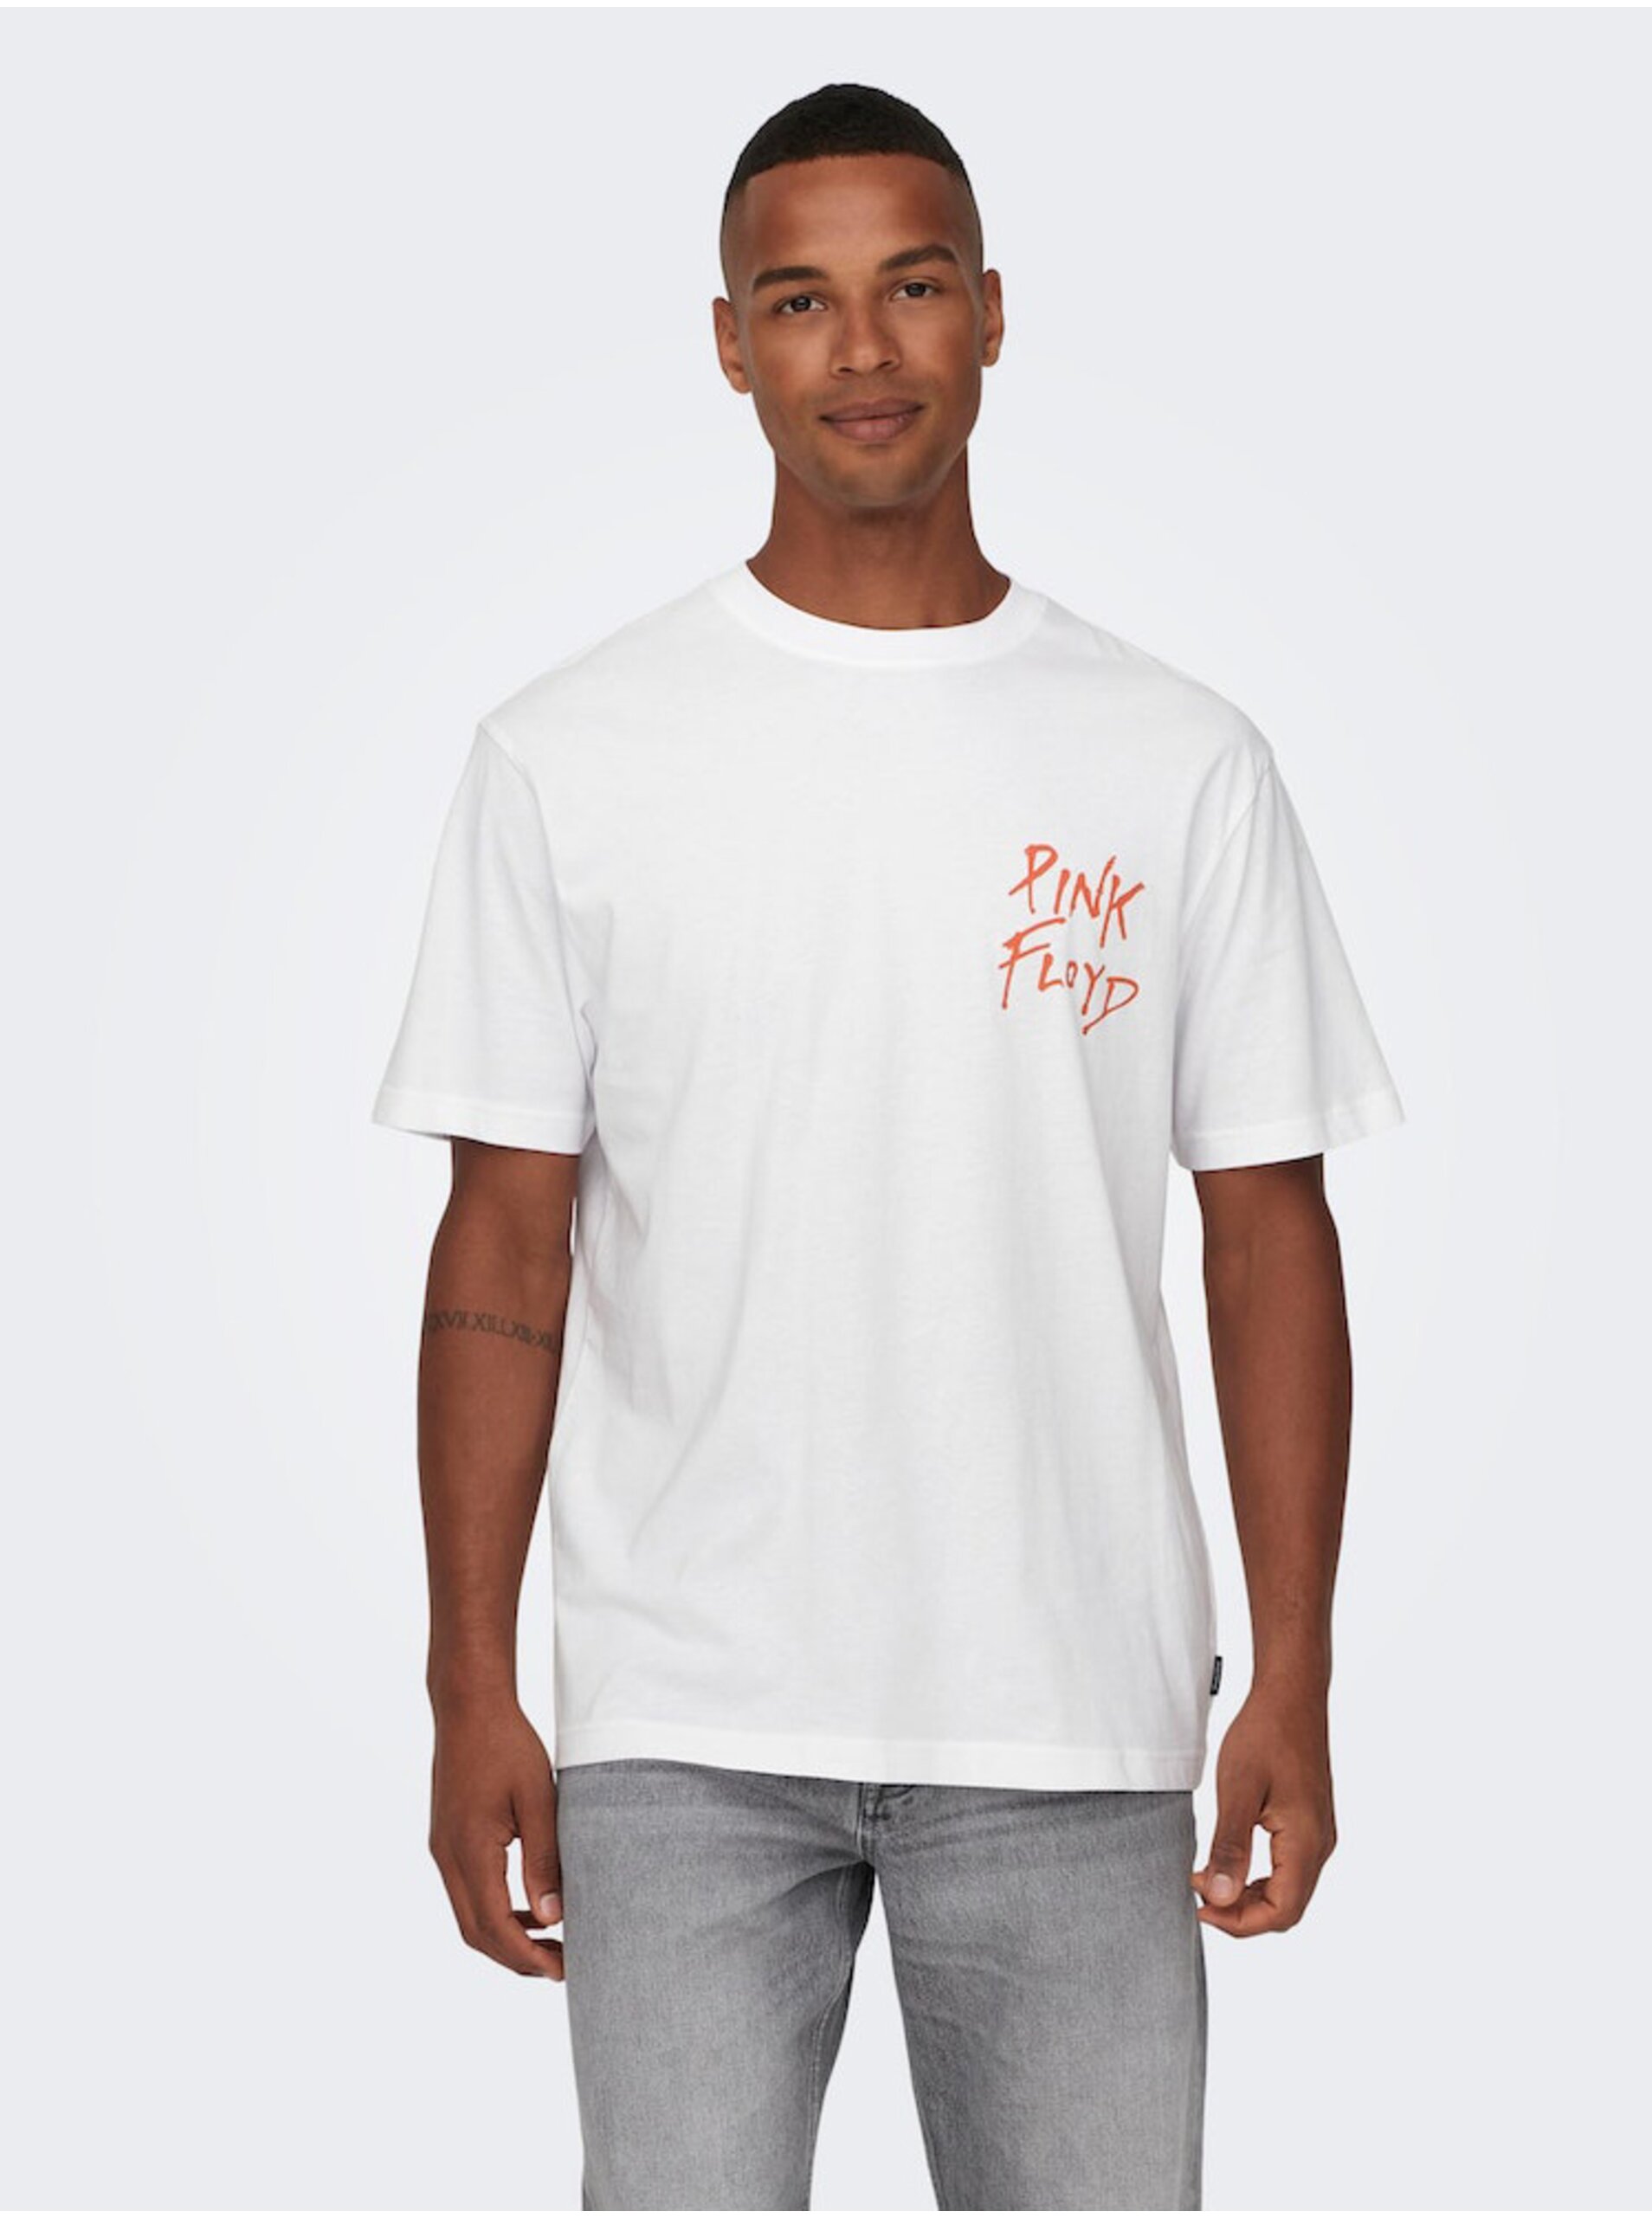 E-shop Bílé pánské tričko s krátkým rukávem ONLY & SONS Pink Floyd